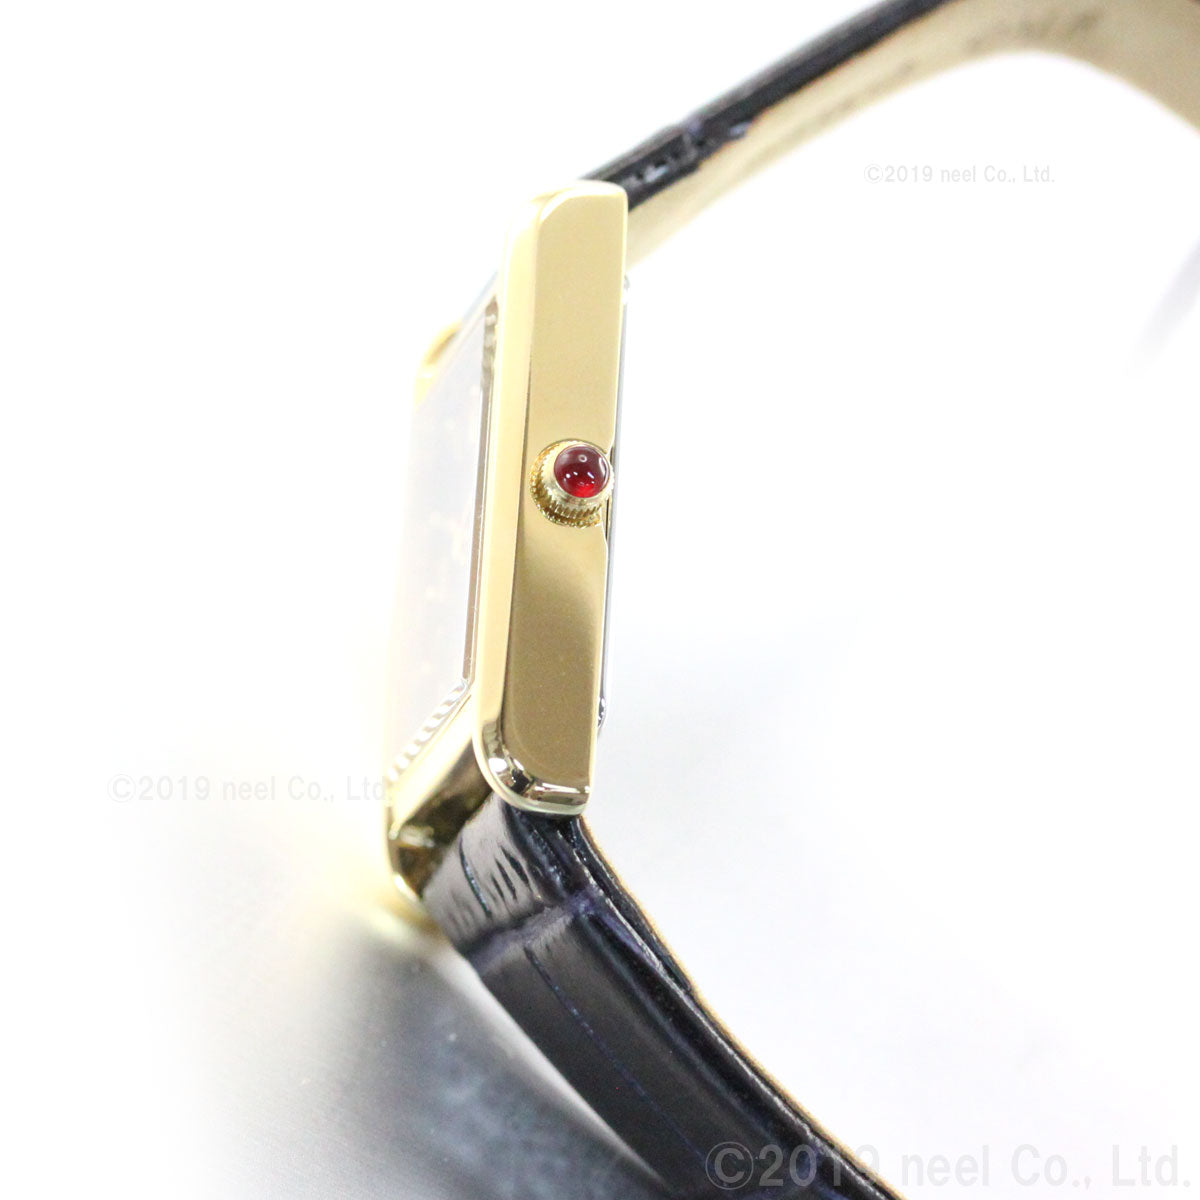 セイコー セレクション SEIKO SELECTION ソーラー 流通限定モデル 腕時計 レディース ナノ・ユニバース nano・universe STPR070